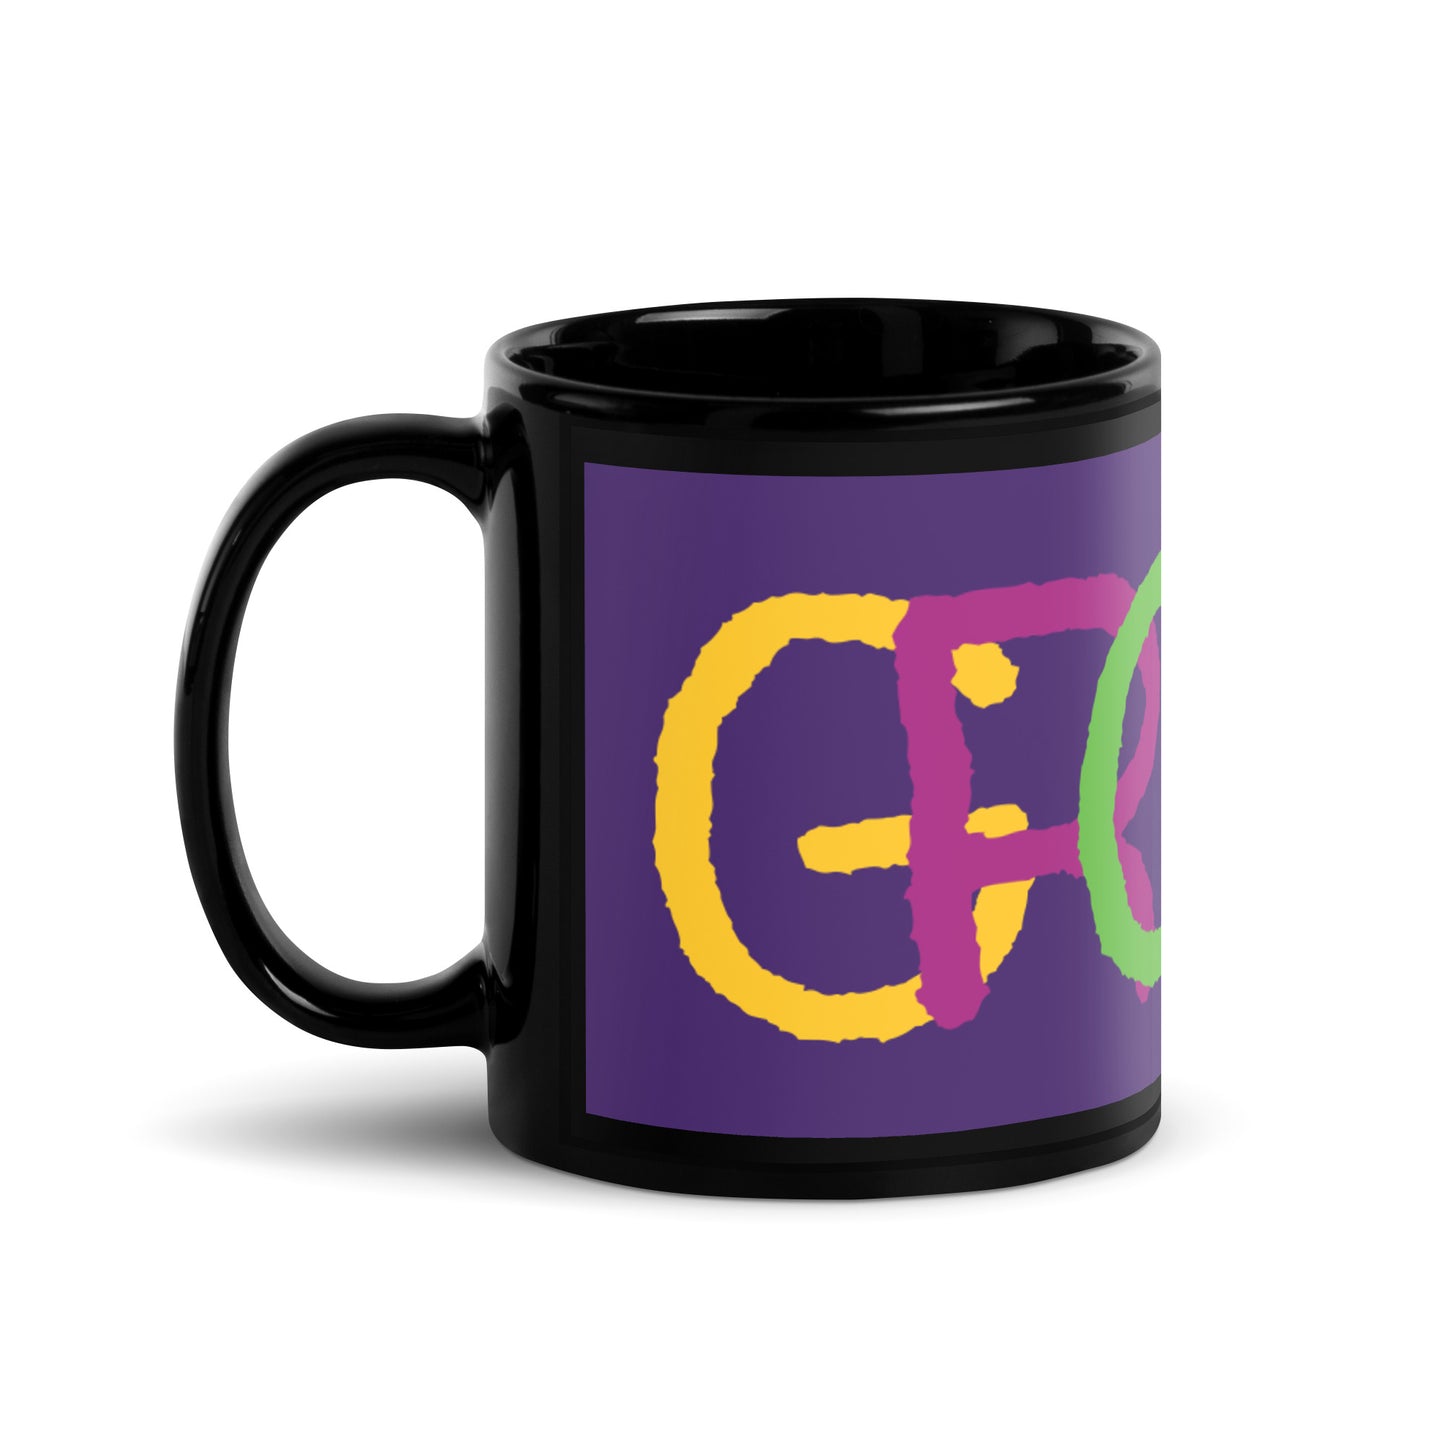 Purple Black Glossy Mug - Groovy